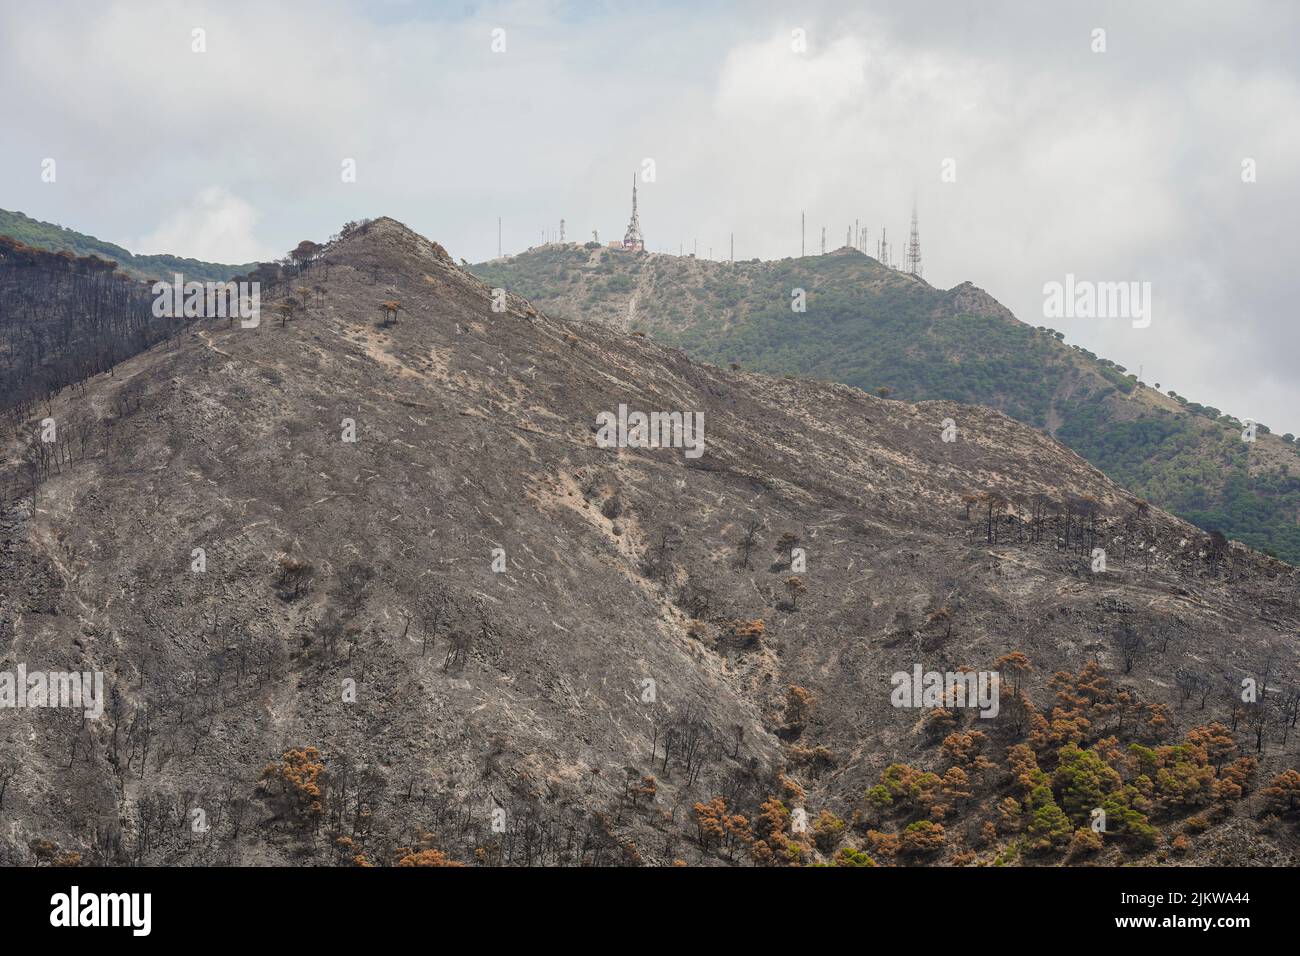 Montañas españolas con bosques de pinos quemados después de incendios forestales, Mijas, Málaga, Andalucía, España Foto de stock